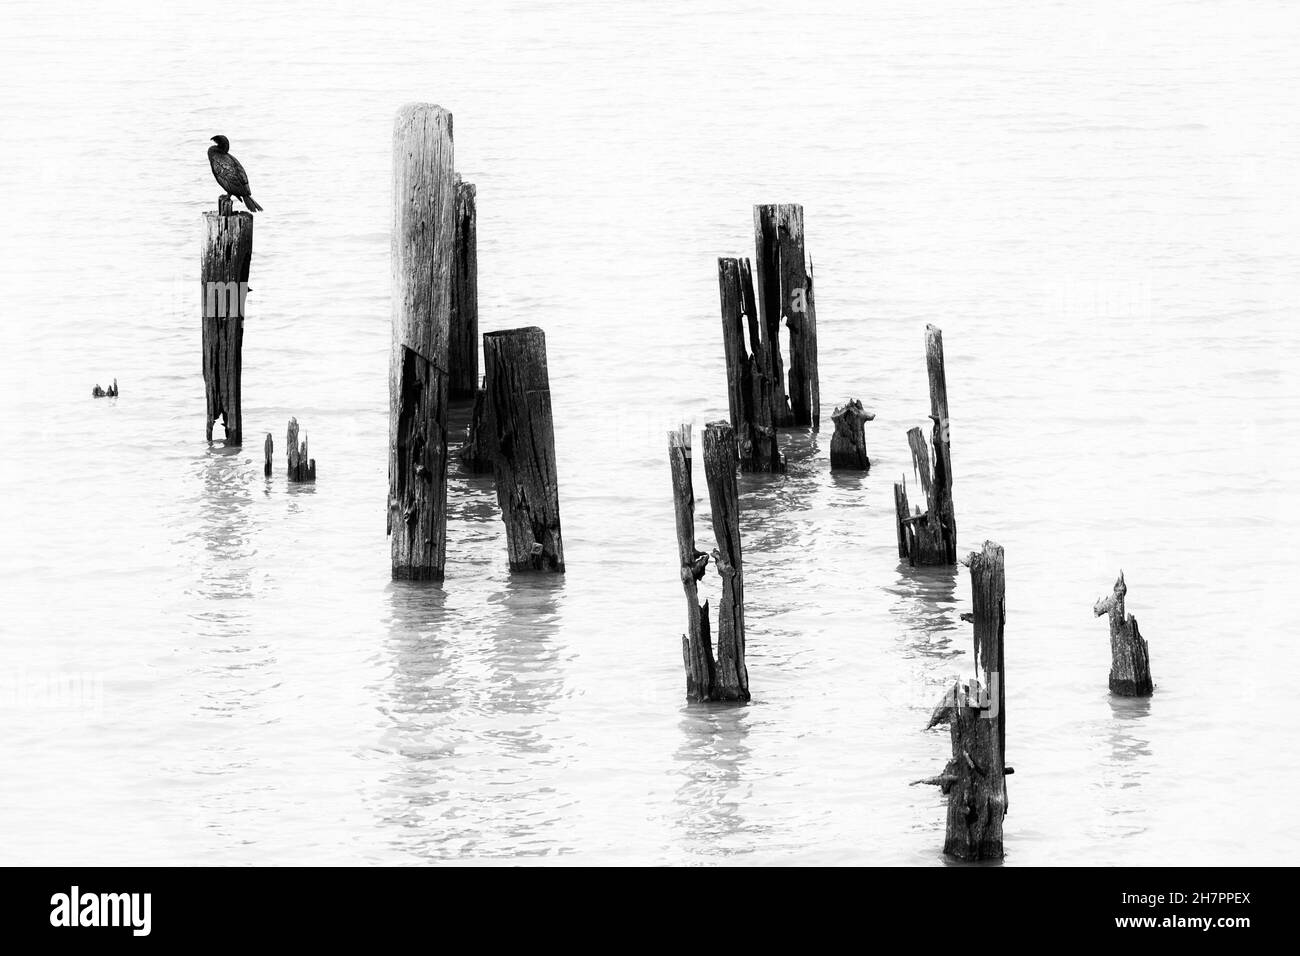 Immagine ad alto contrasto in bianco e nero di Cormorant e vecchi pali in legno, River Thames, Londra, UK. Foto Stock